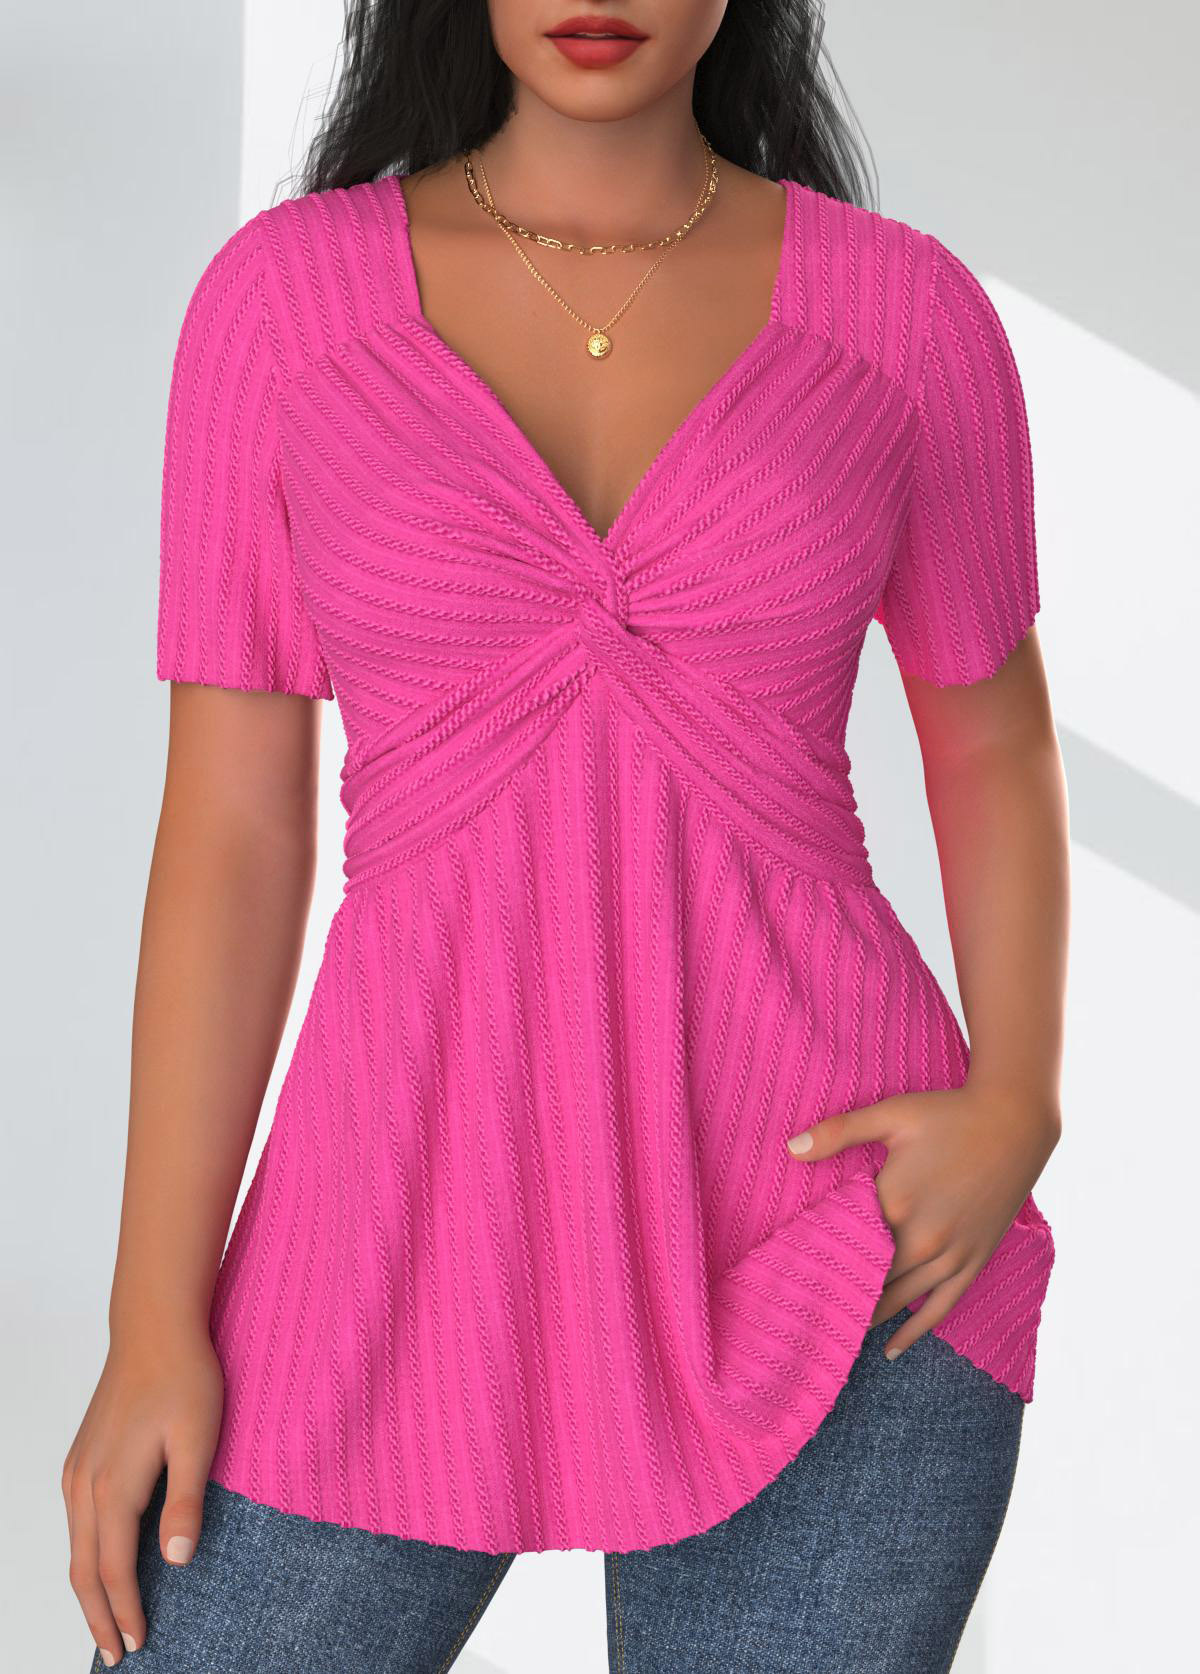 Textured Fabric Hot Pink Short Sleeve T Shirt